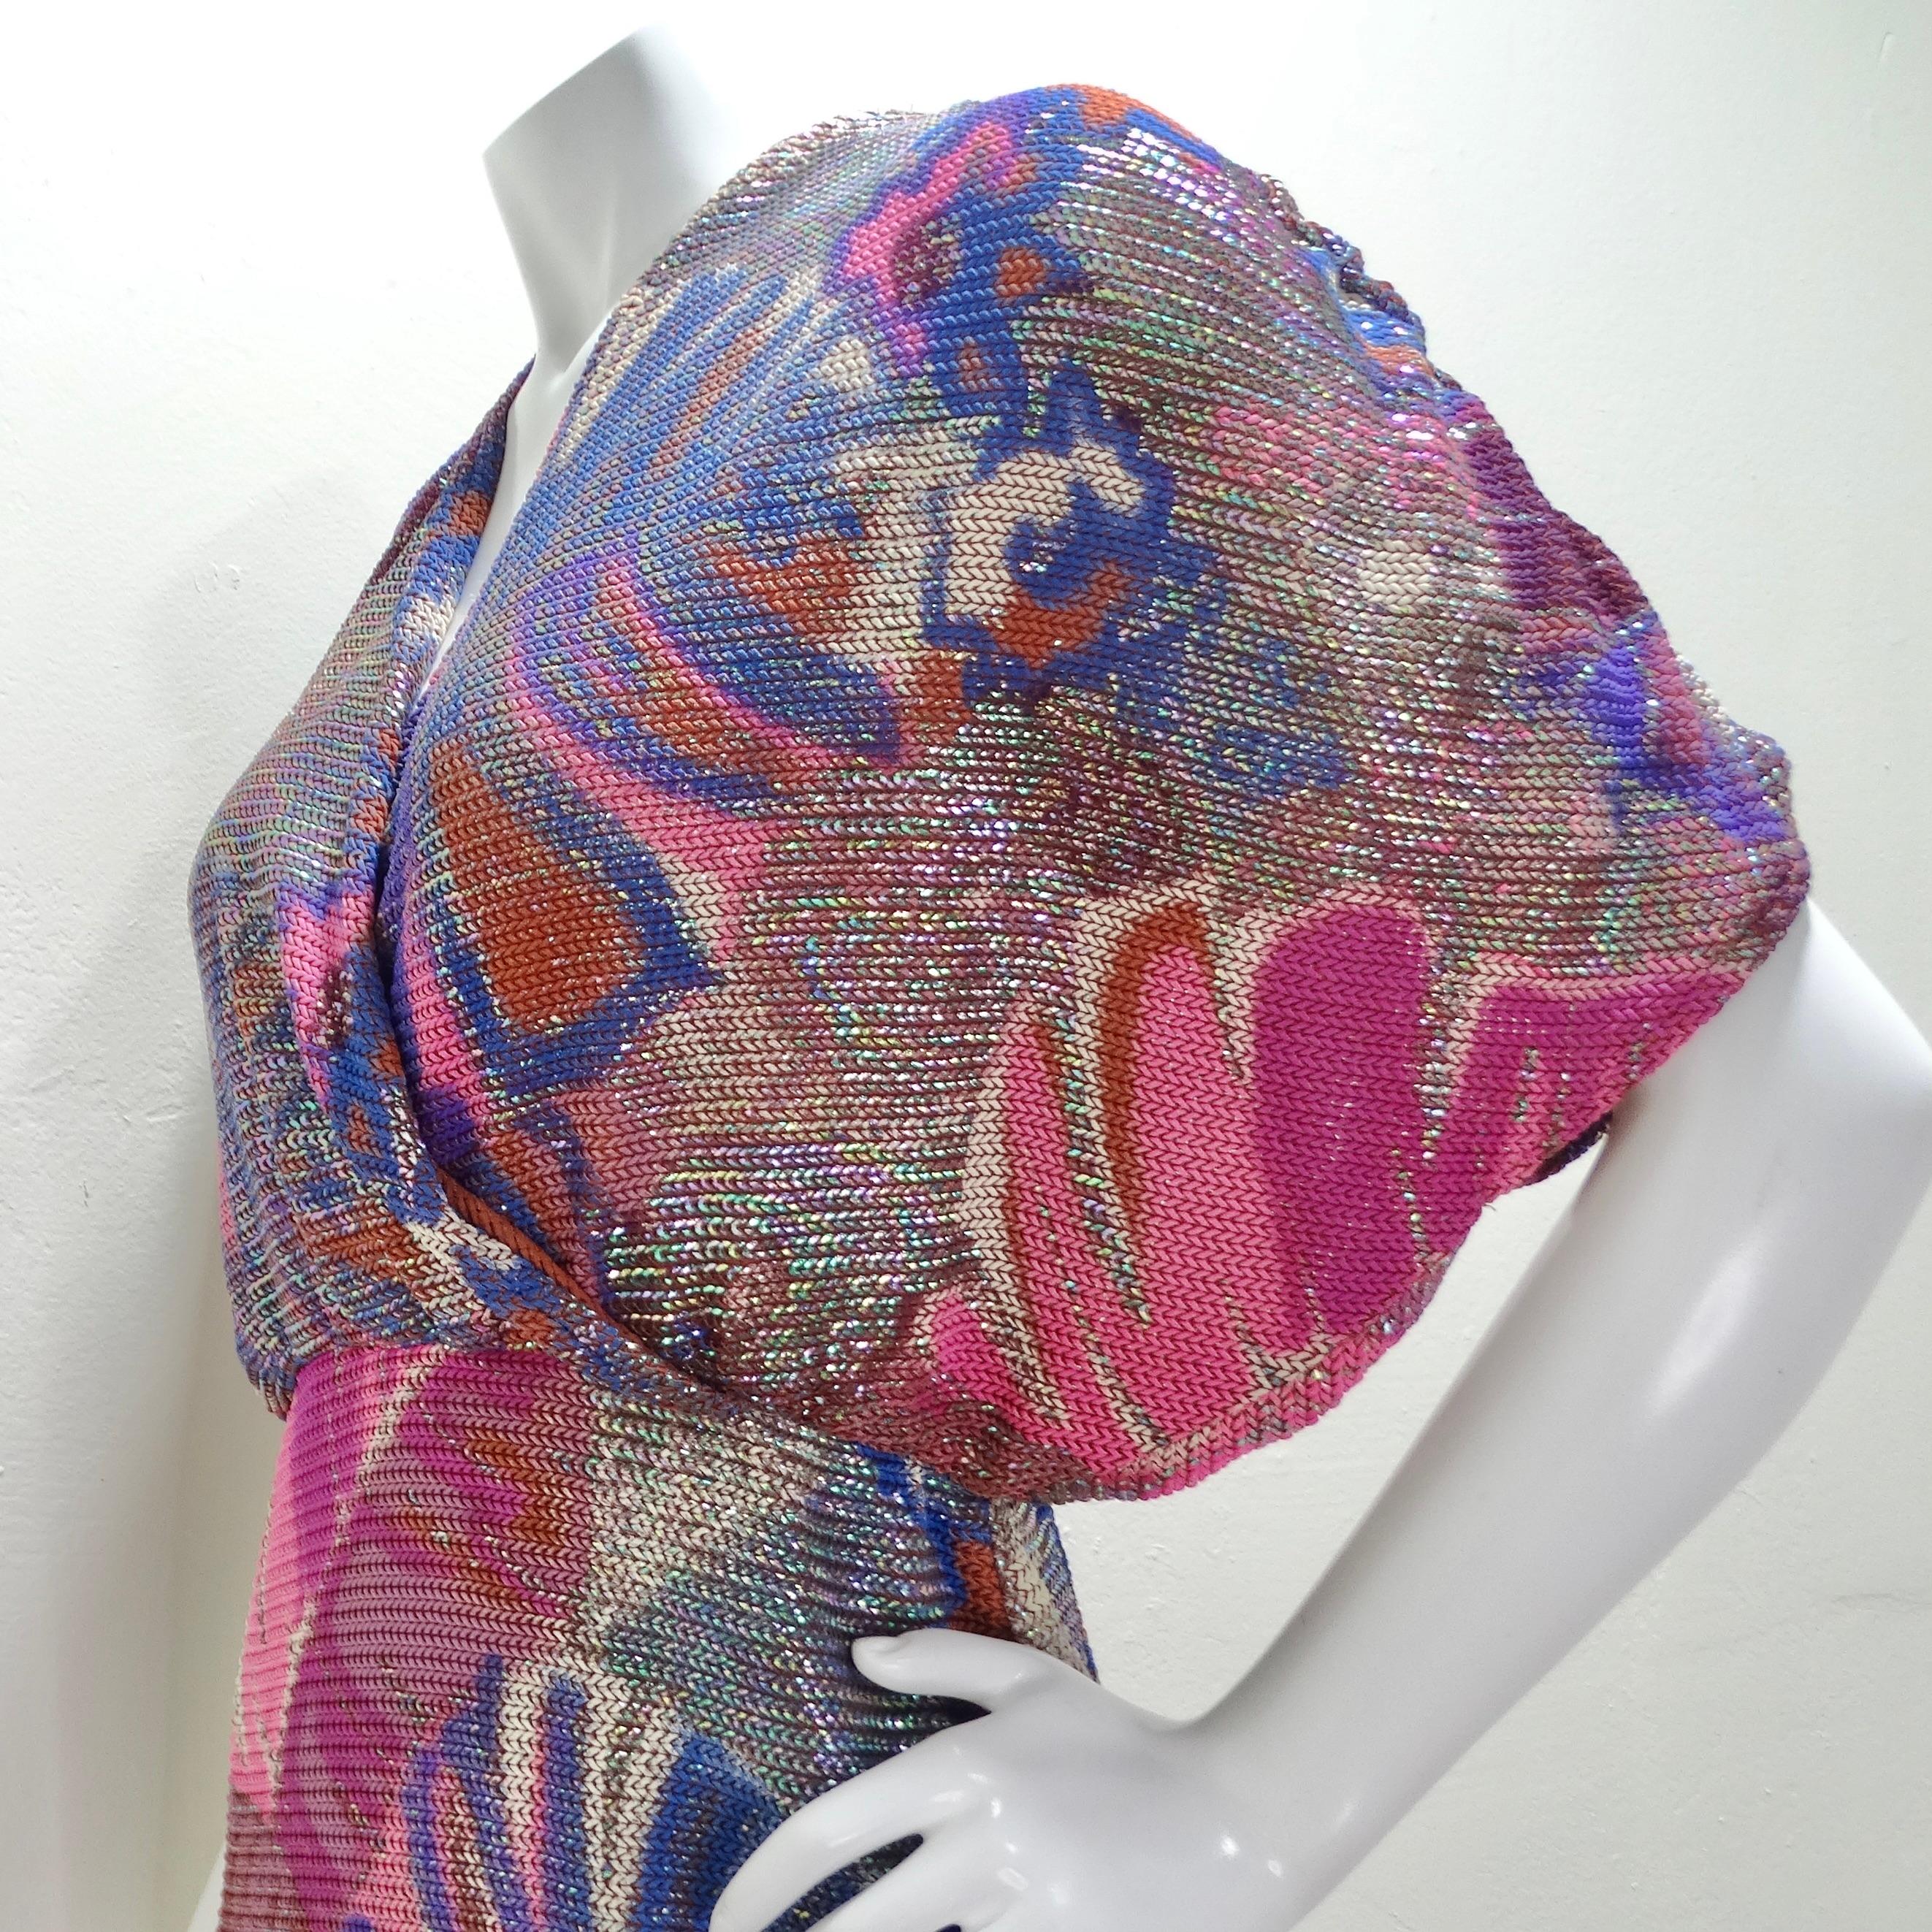 Frances La Vie Mosaic Knit Multicolor Dress For Sale 3